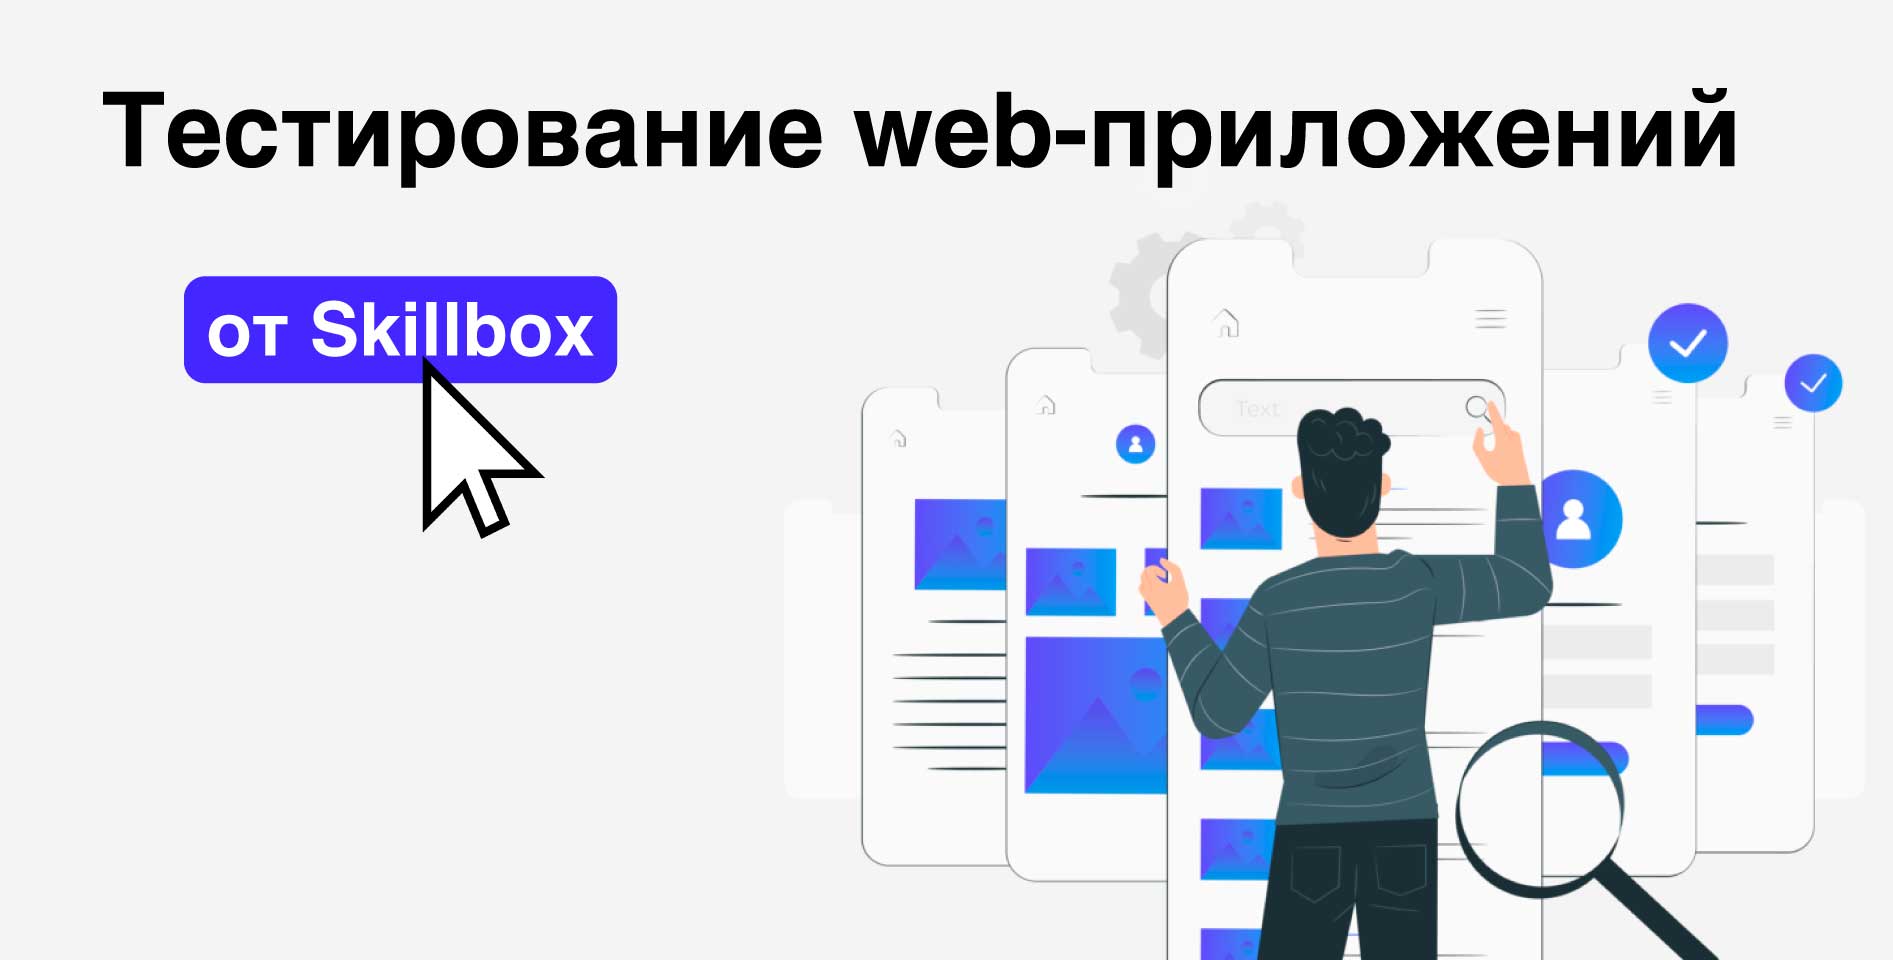 Skillbox — Тестирование web-приложений